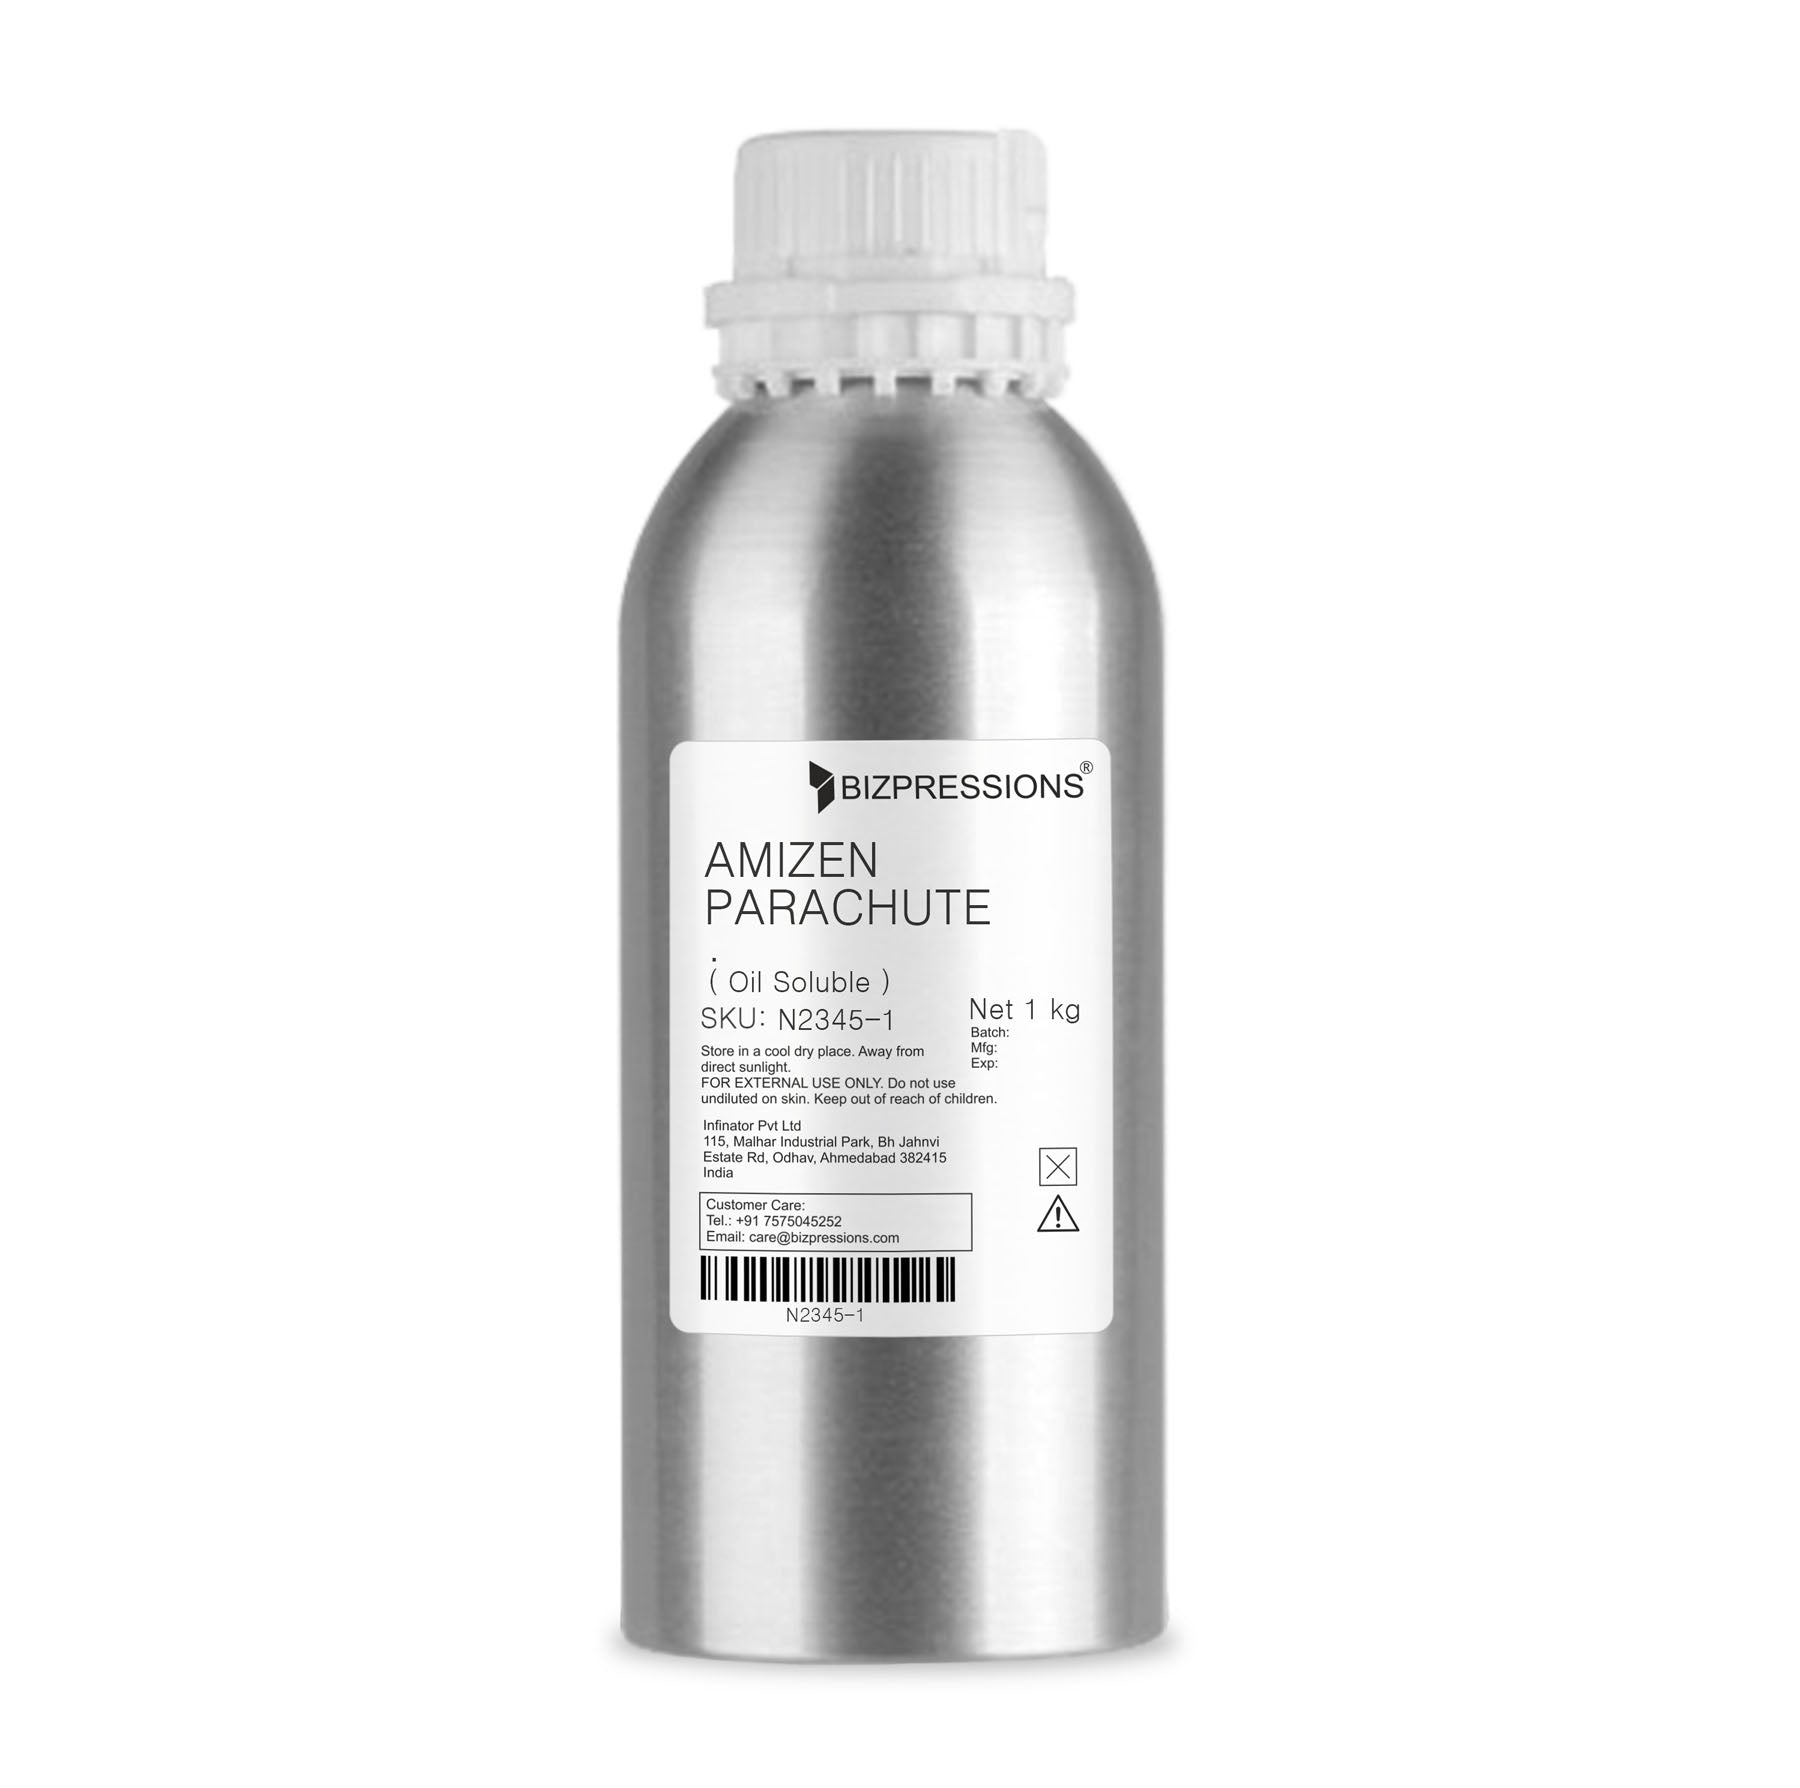 AMIZEN PARACHUTE - Fragrance ( Oil Soluble ) - 1 kg